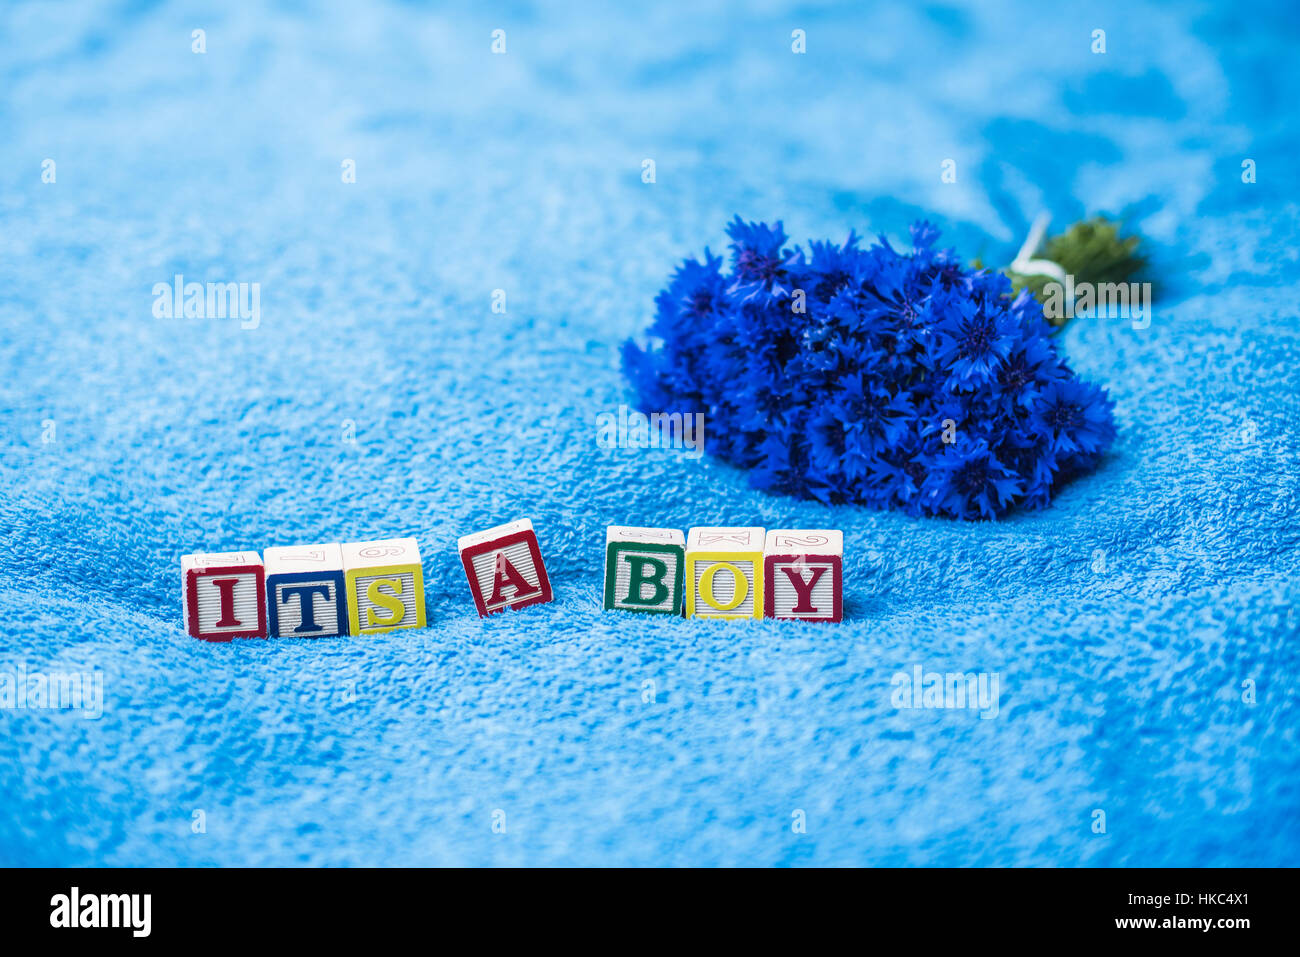 Es ist ein Junge Schwangerschaftansage aus Spielzeug-Buchstaben-Blöcke auf blaue Bad Handtuch Hintergrund mit Kornblumen Stockfoto